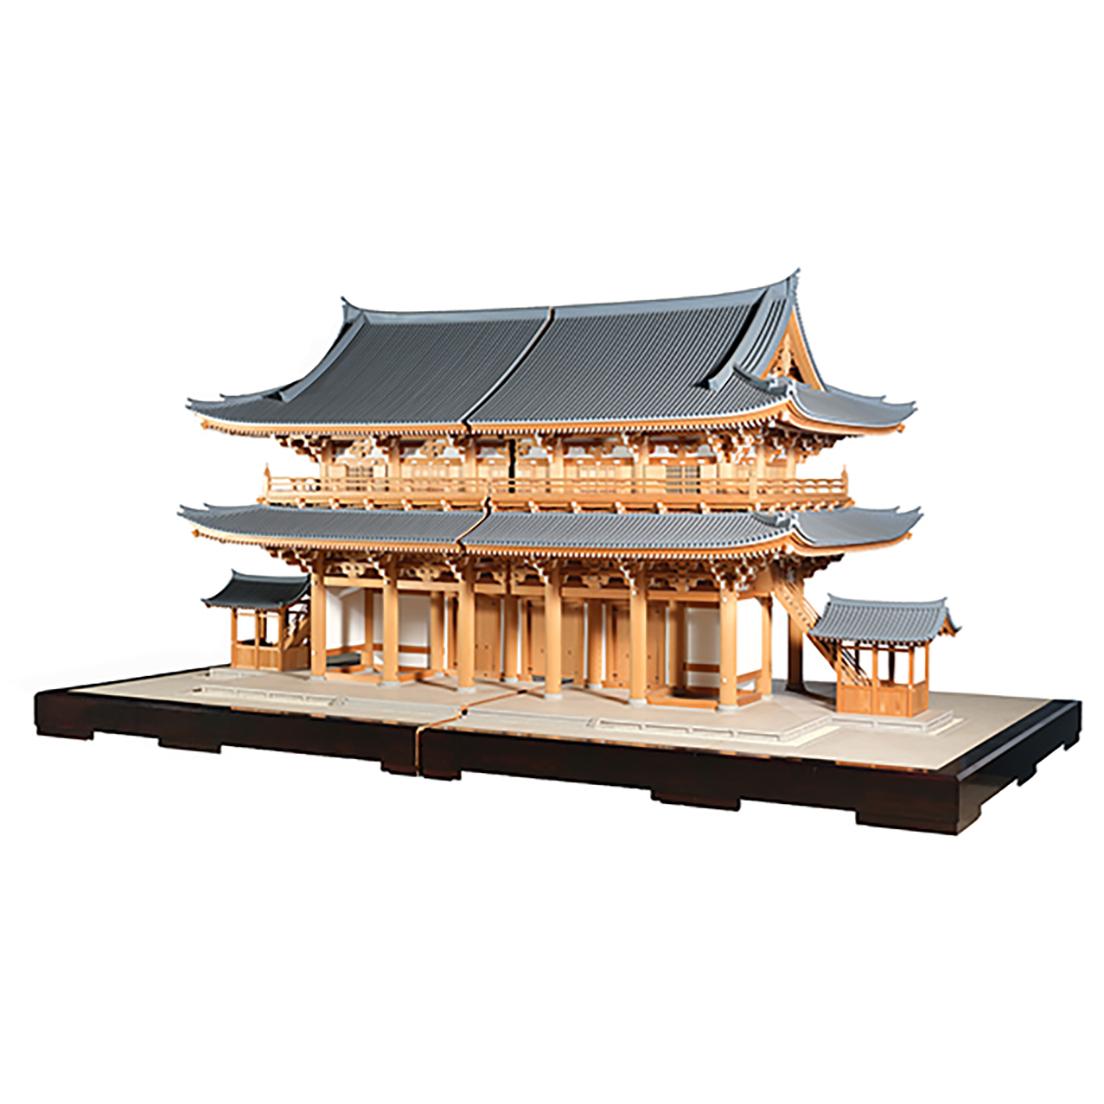 東福寺三門1/10模型 1979年 国立歴史民俗博物館蔵